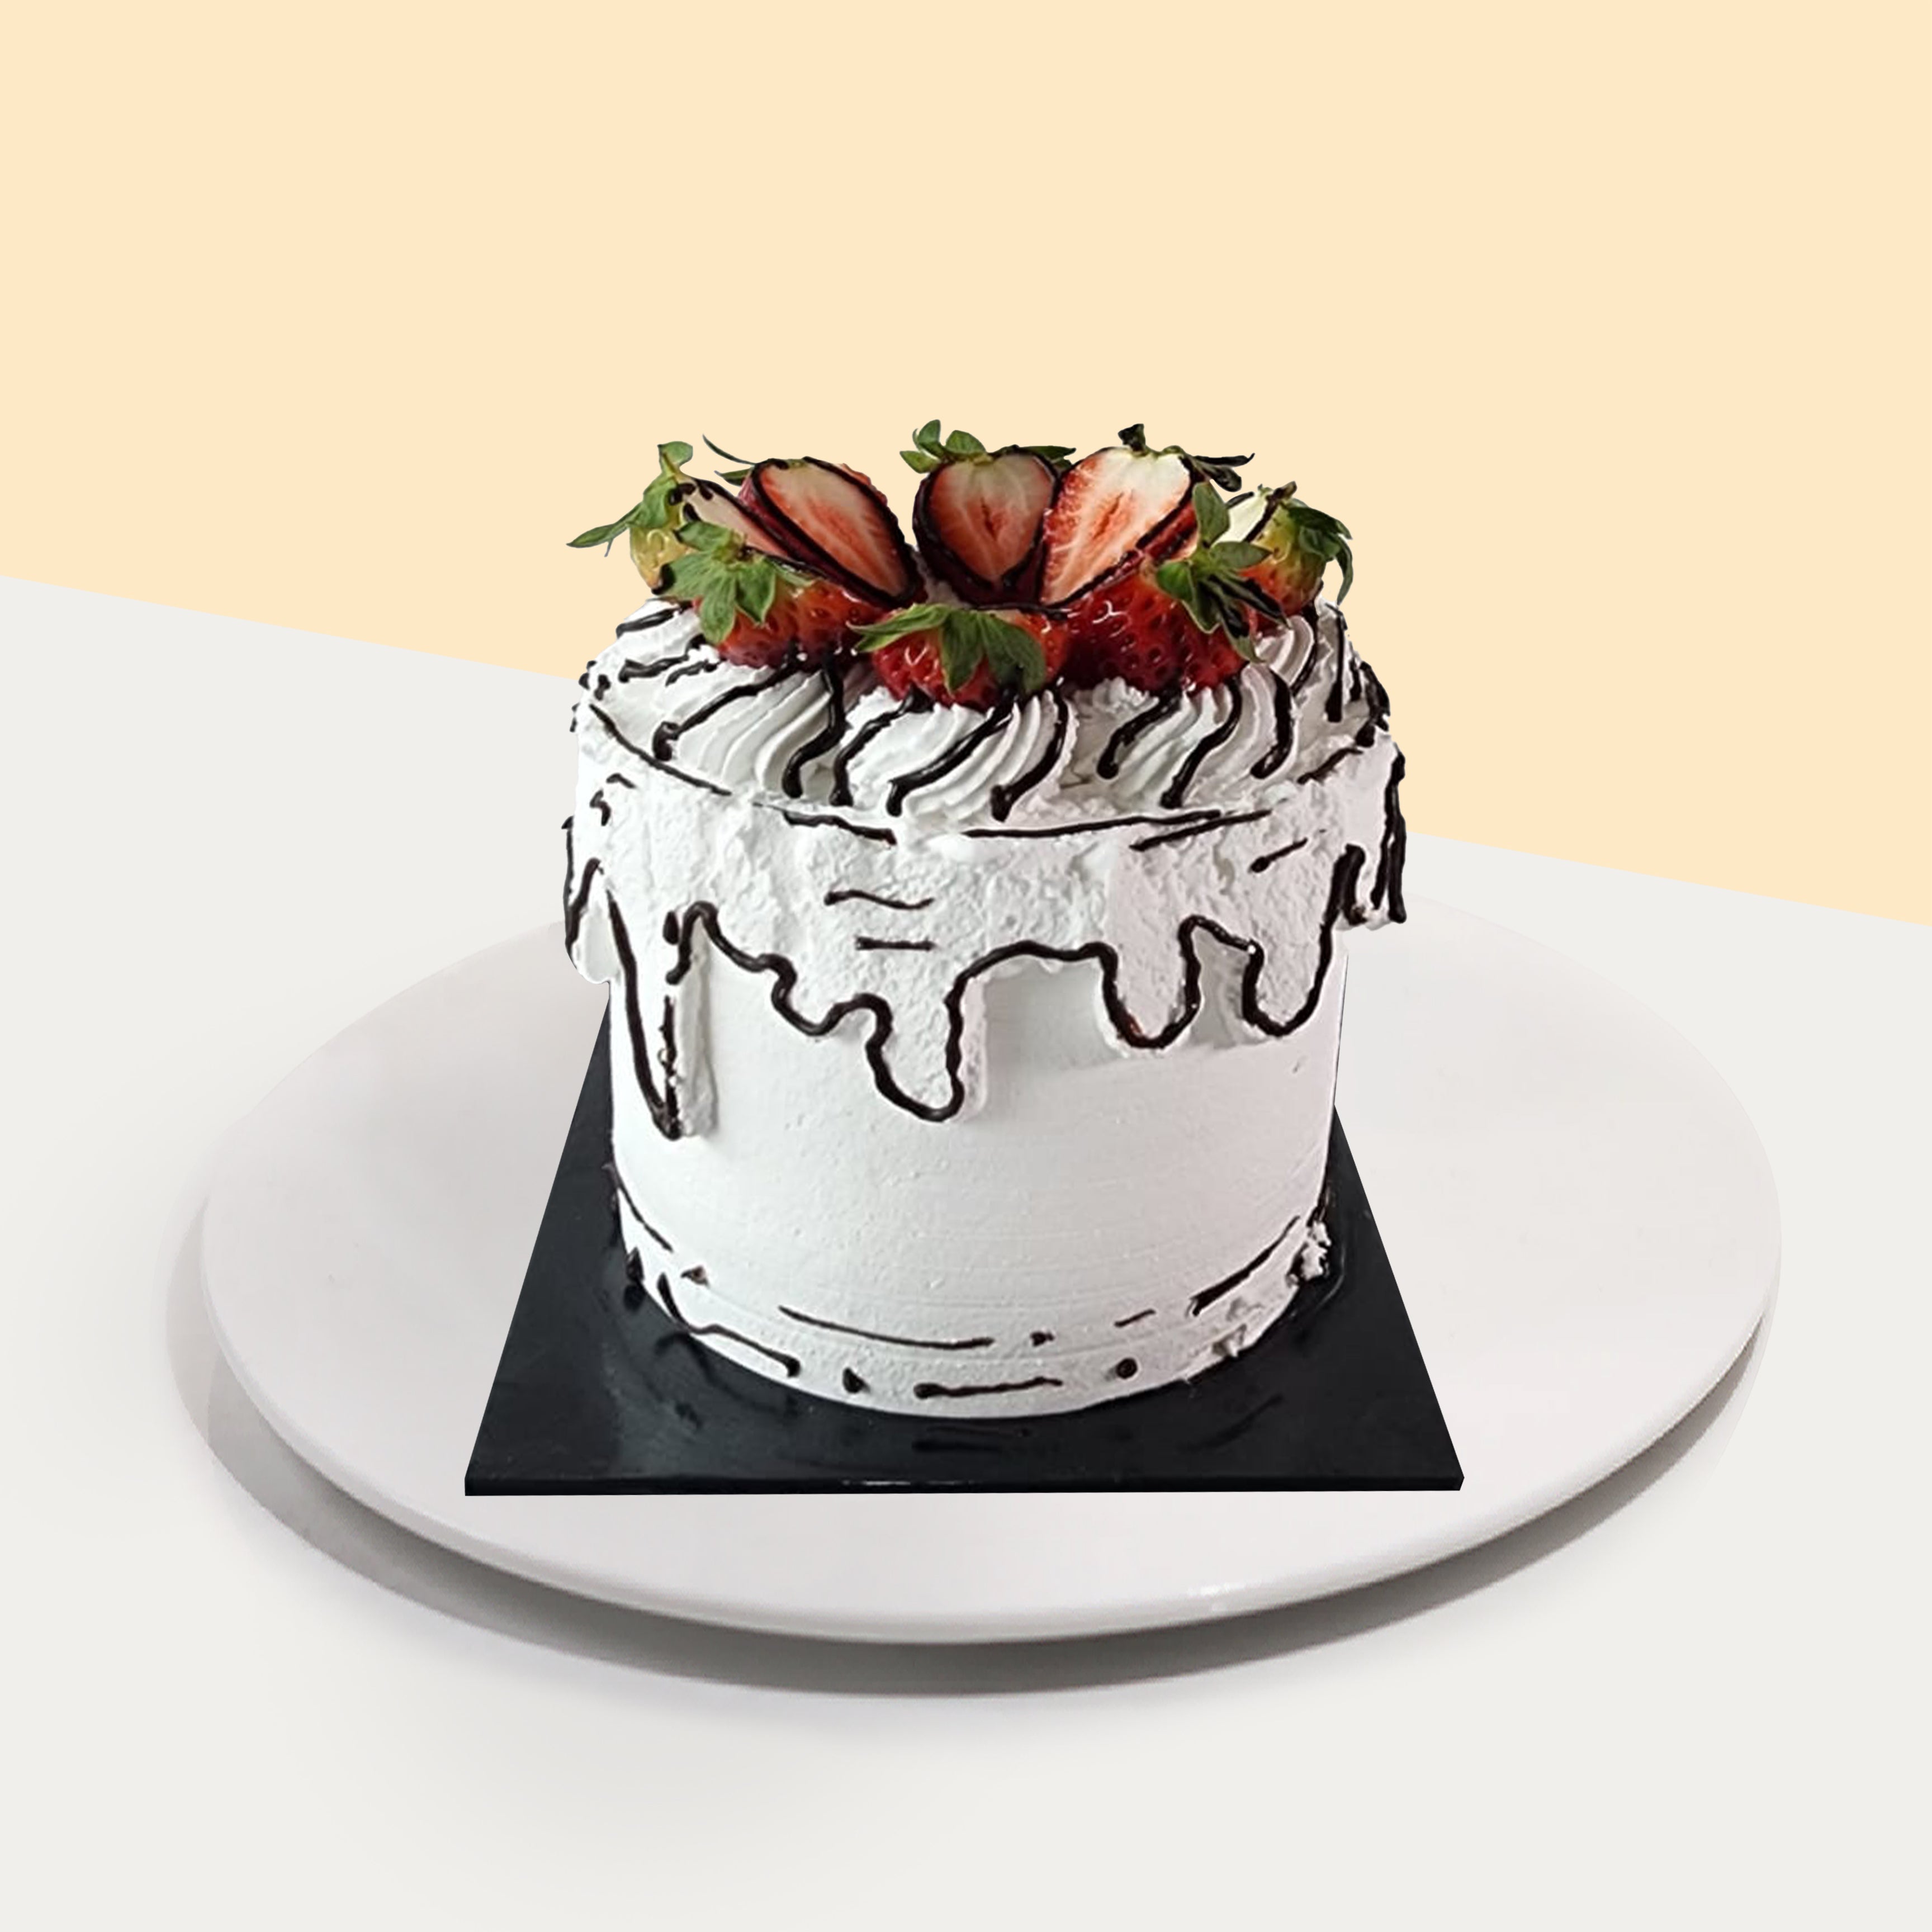 Pound Cake Recipe | Epicurious